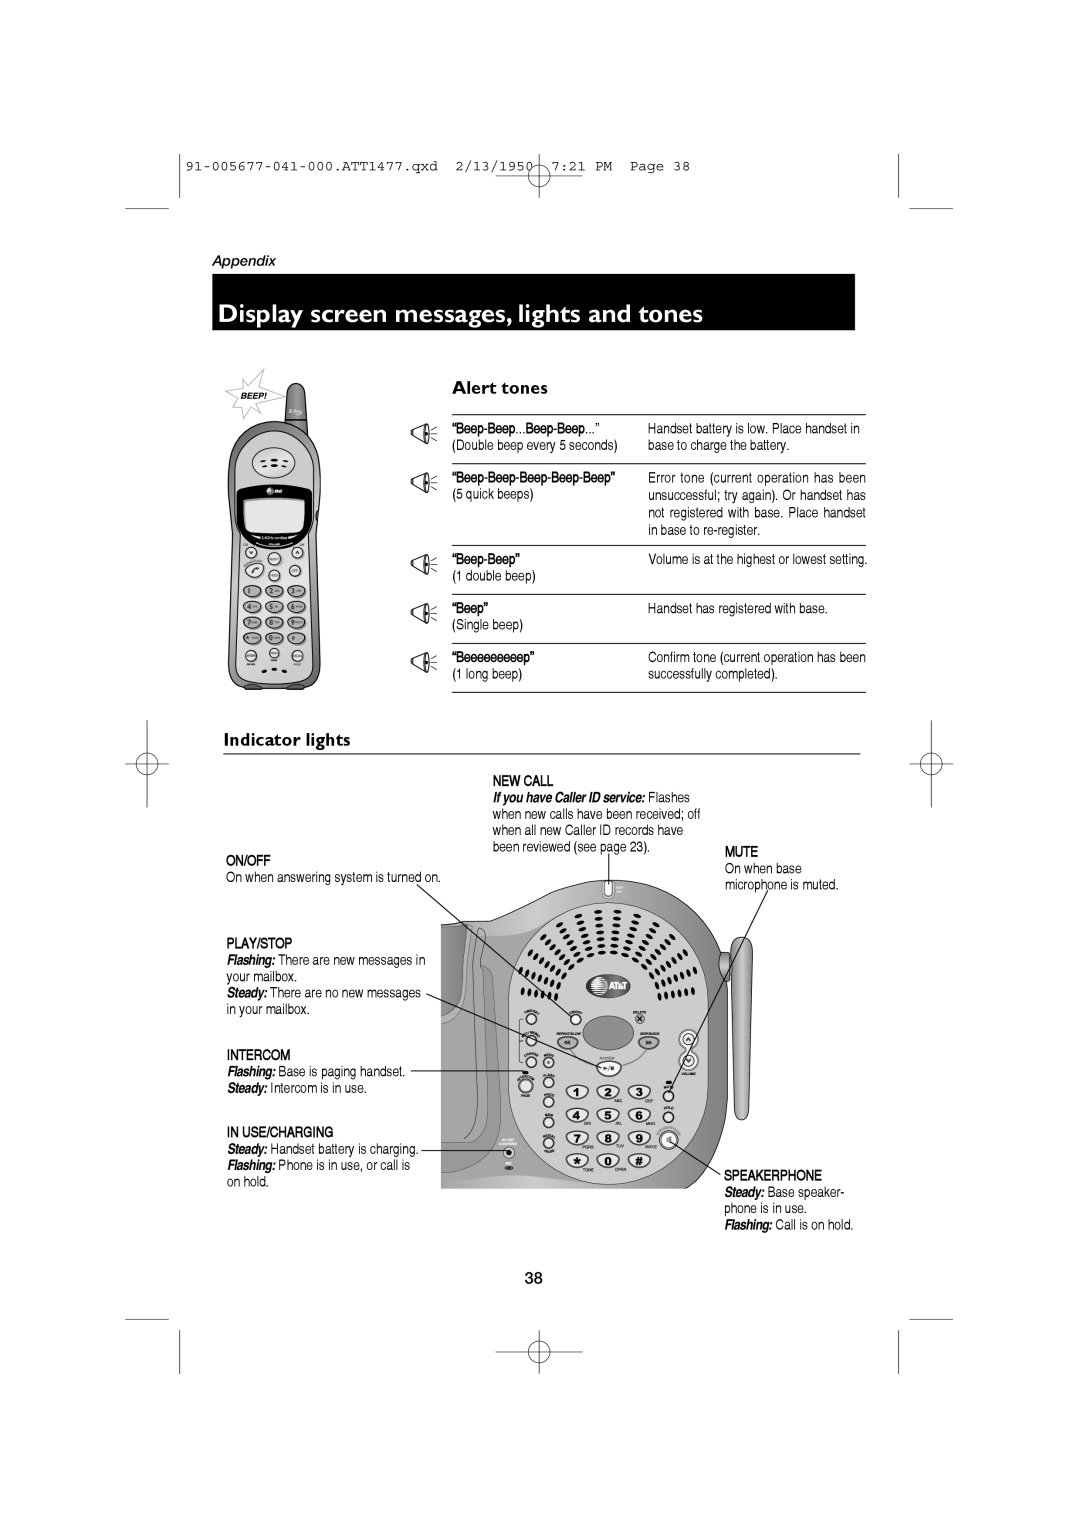 AT&T 1177 user manual Display screen messages, lights and tones, Alert tones, Indicator lights, Appendix 